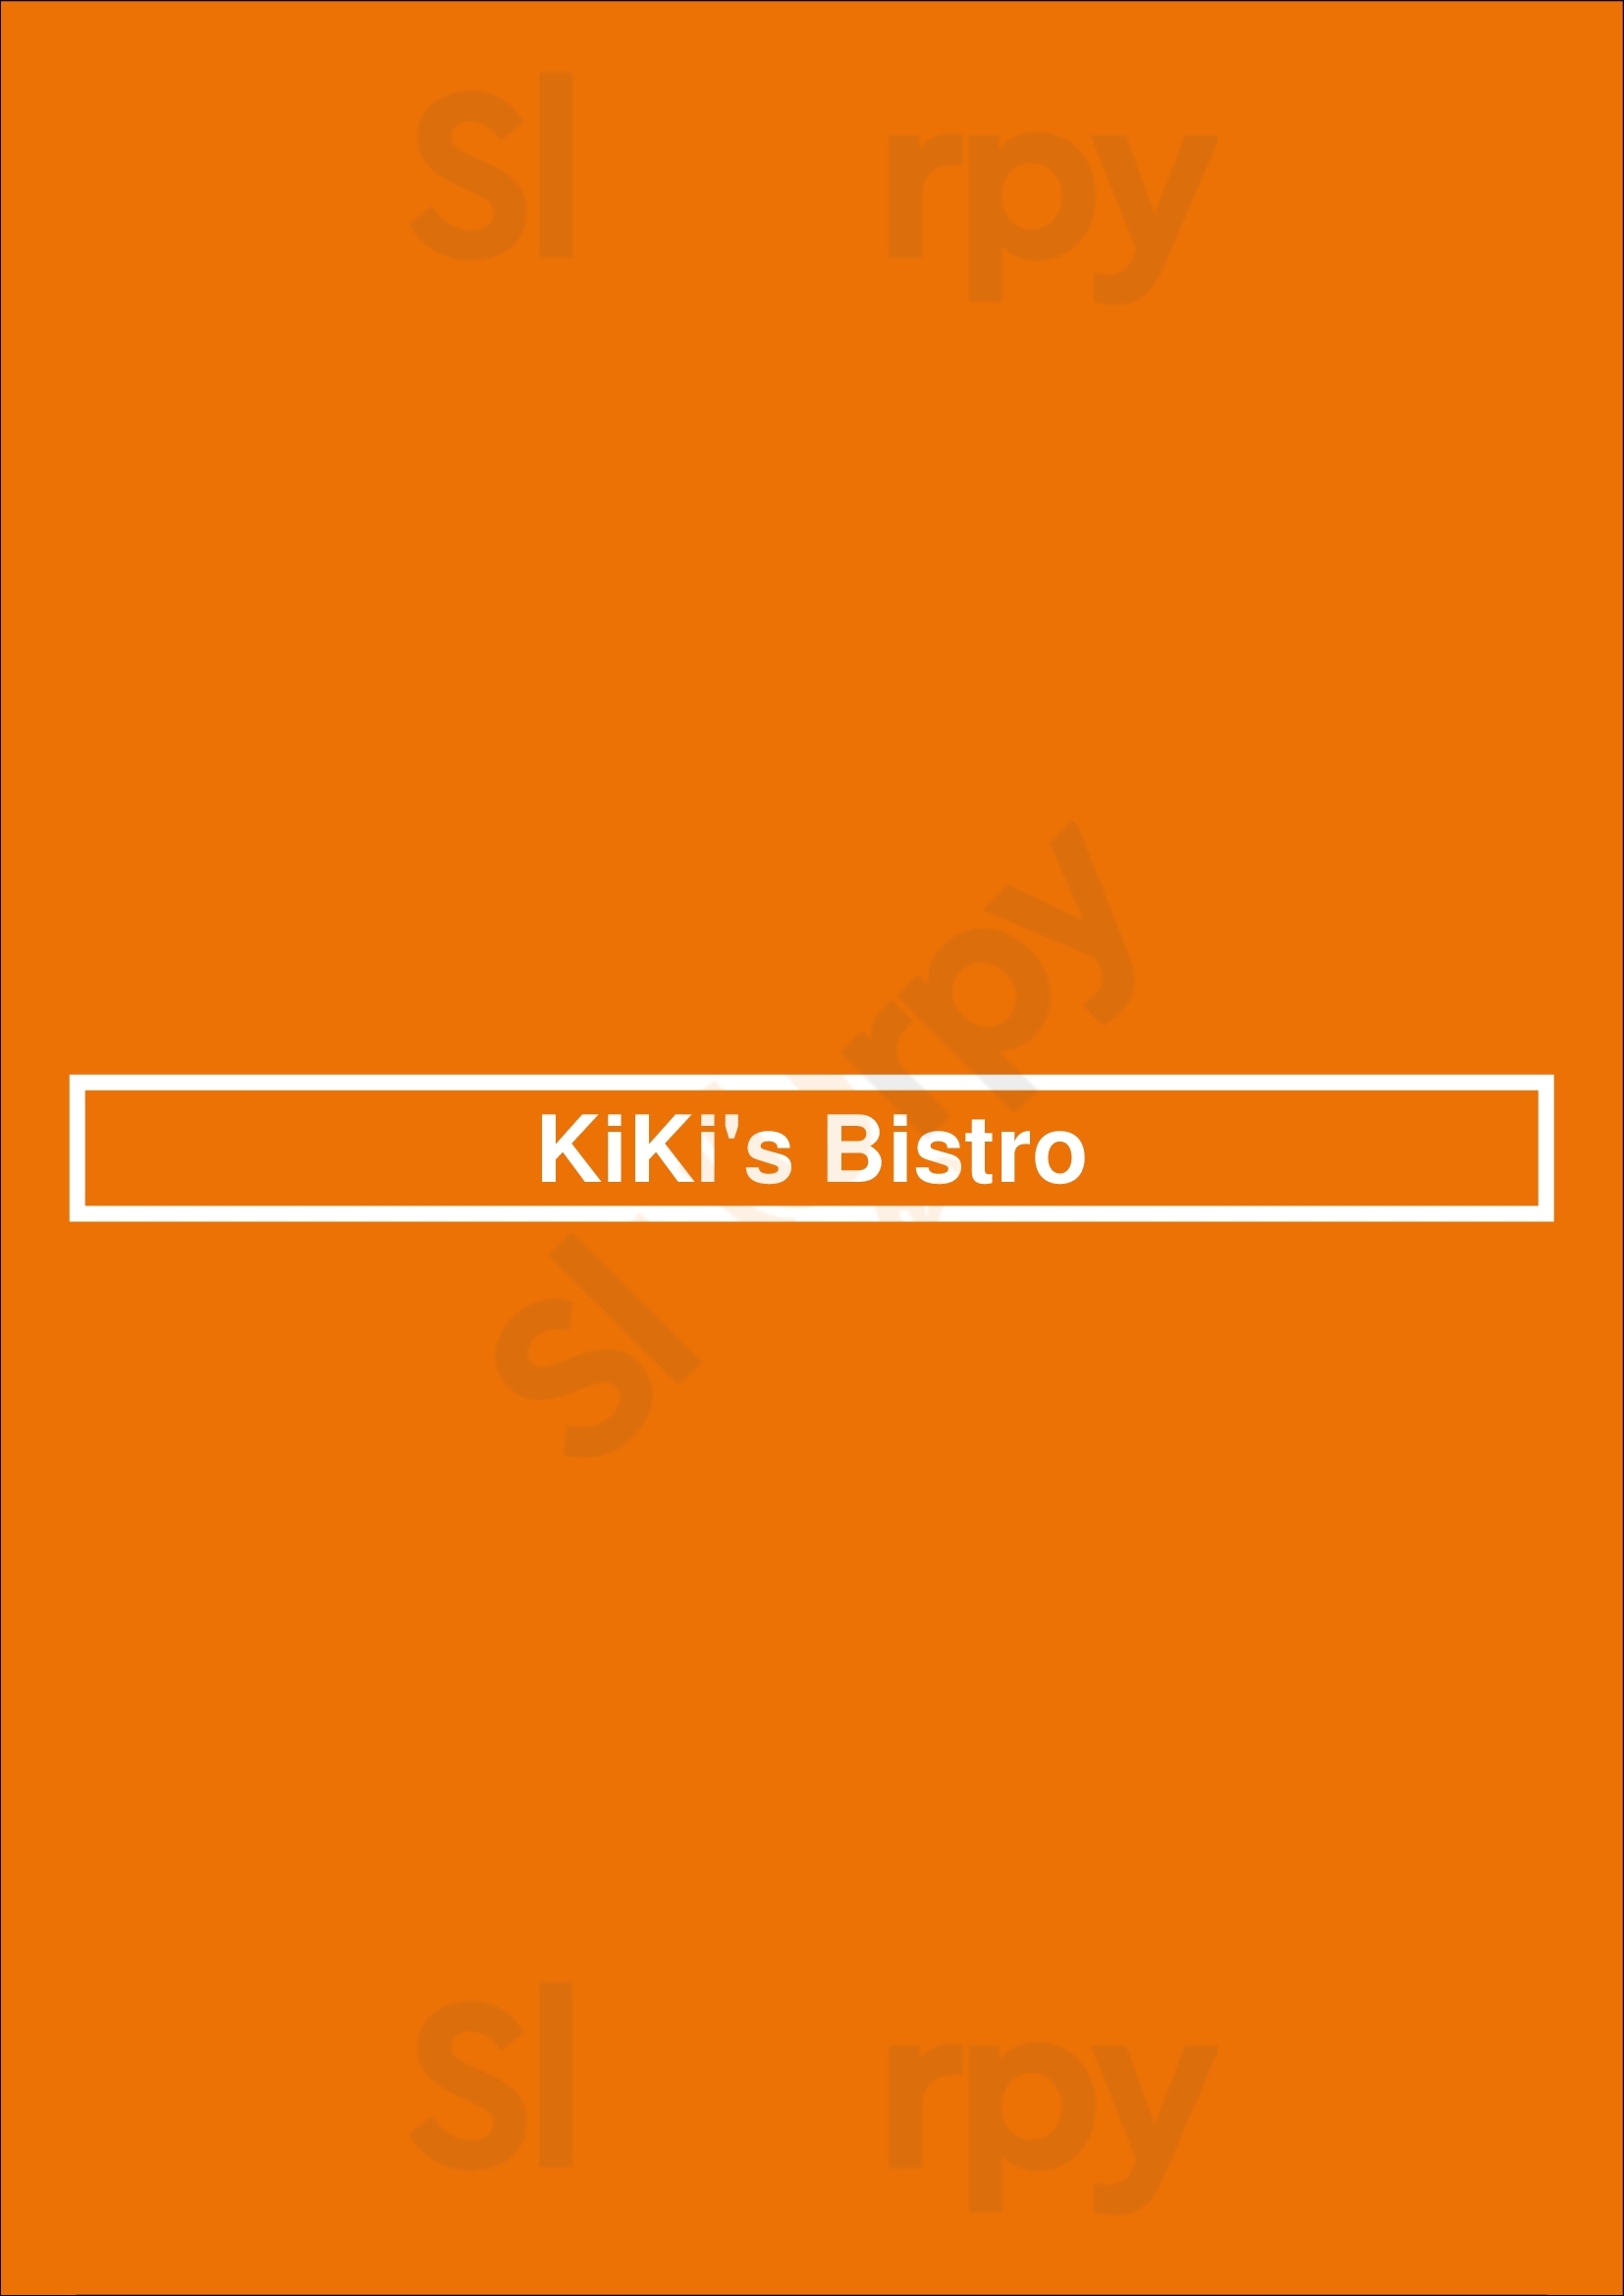 Kiki's Bistro Chicago Menu - 1